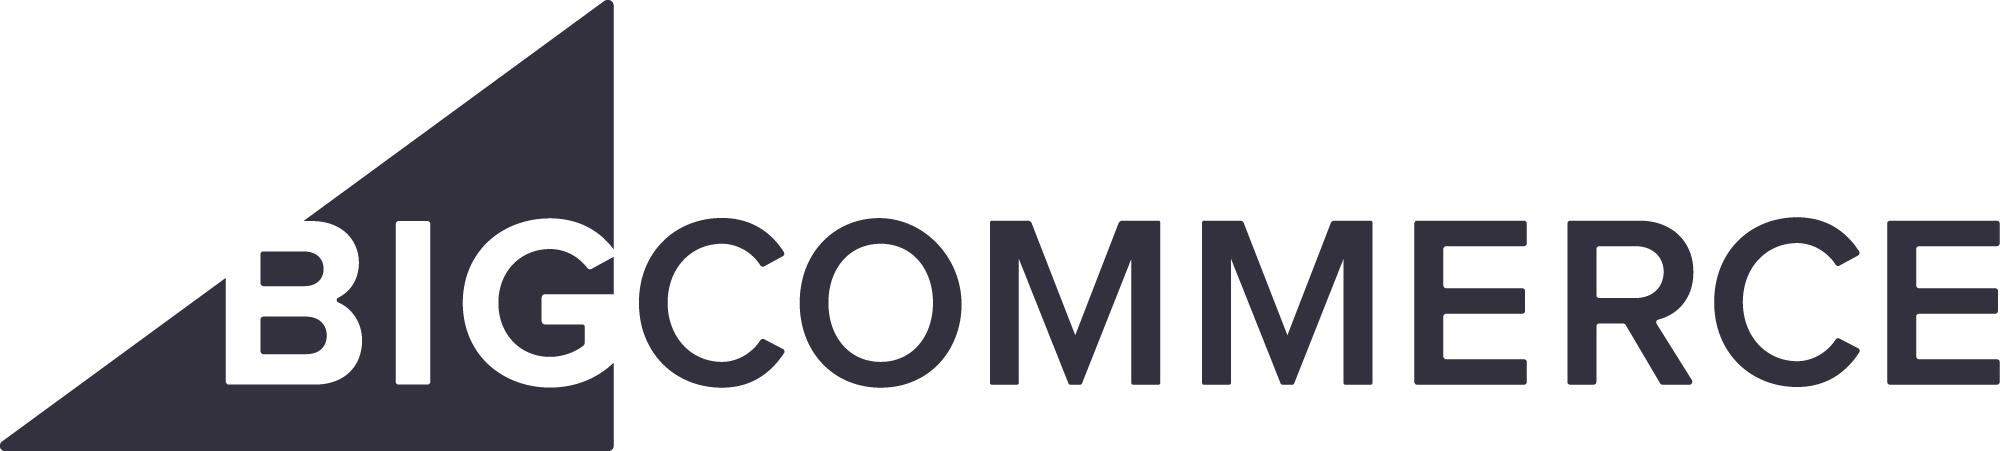 BIGCOMMERCE - Plateforme de commerce électronique pour Acumatica